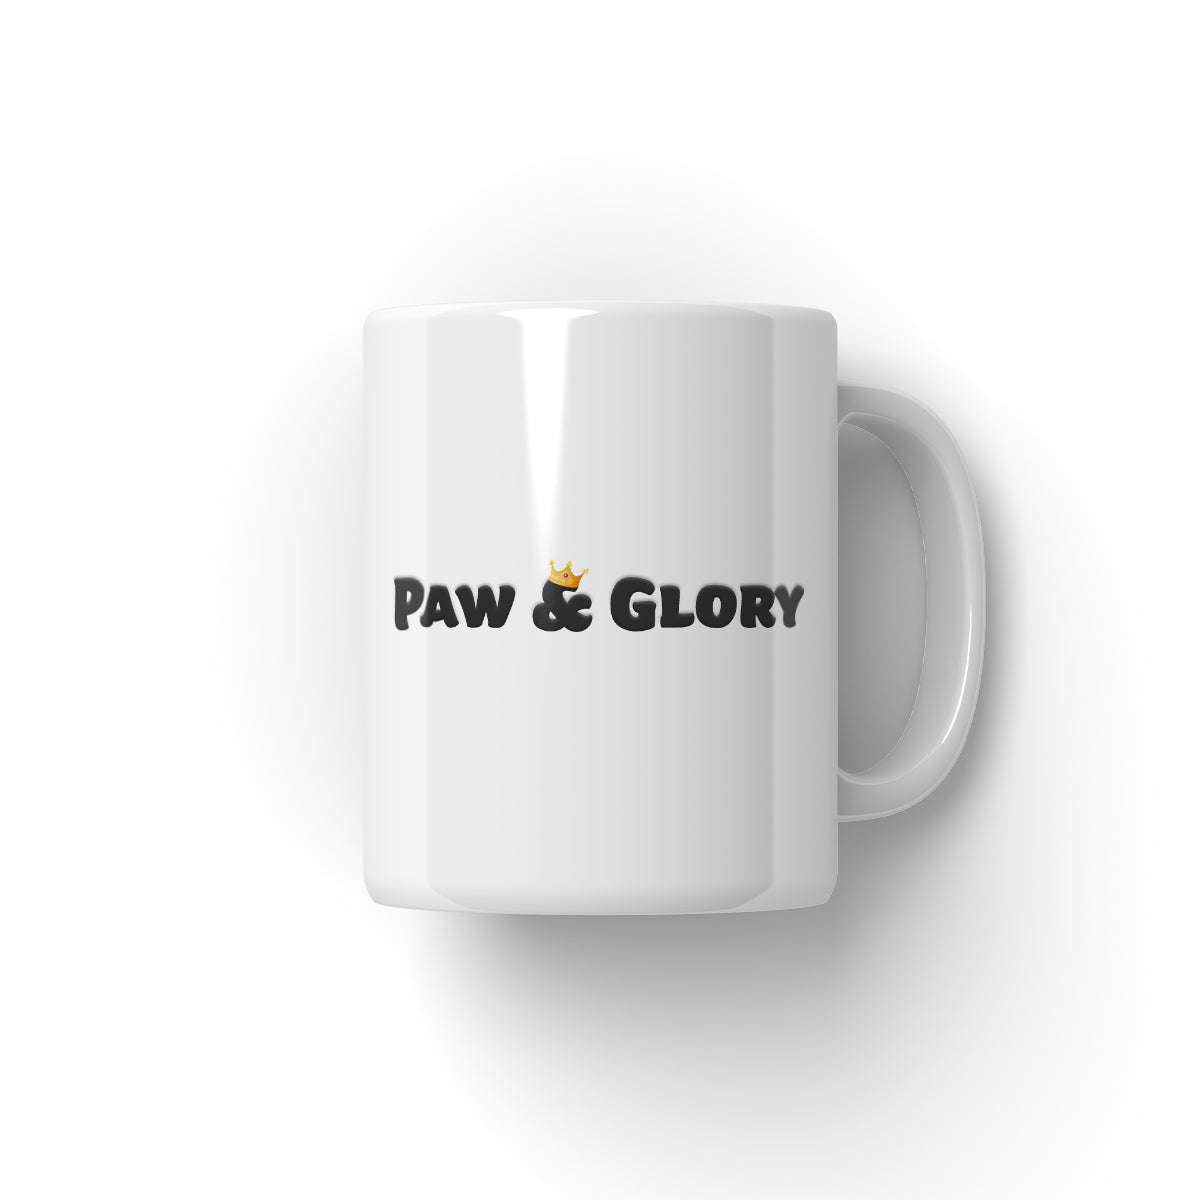 West Ham Football Club: Paw & Glory, paw and glory, dog on mug, personalised dog mug, custom dog face mug, coffee mug with dog picture, pet mug portraits, dog mugs custom, Pet Portrait Mug